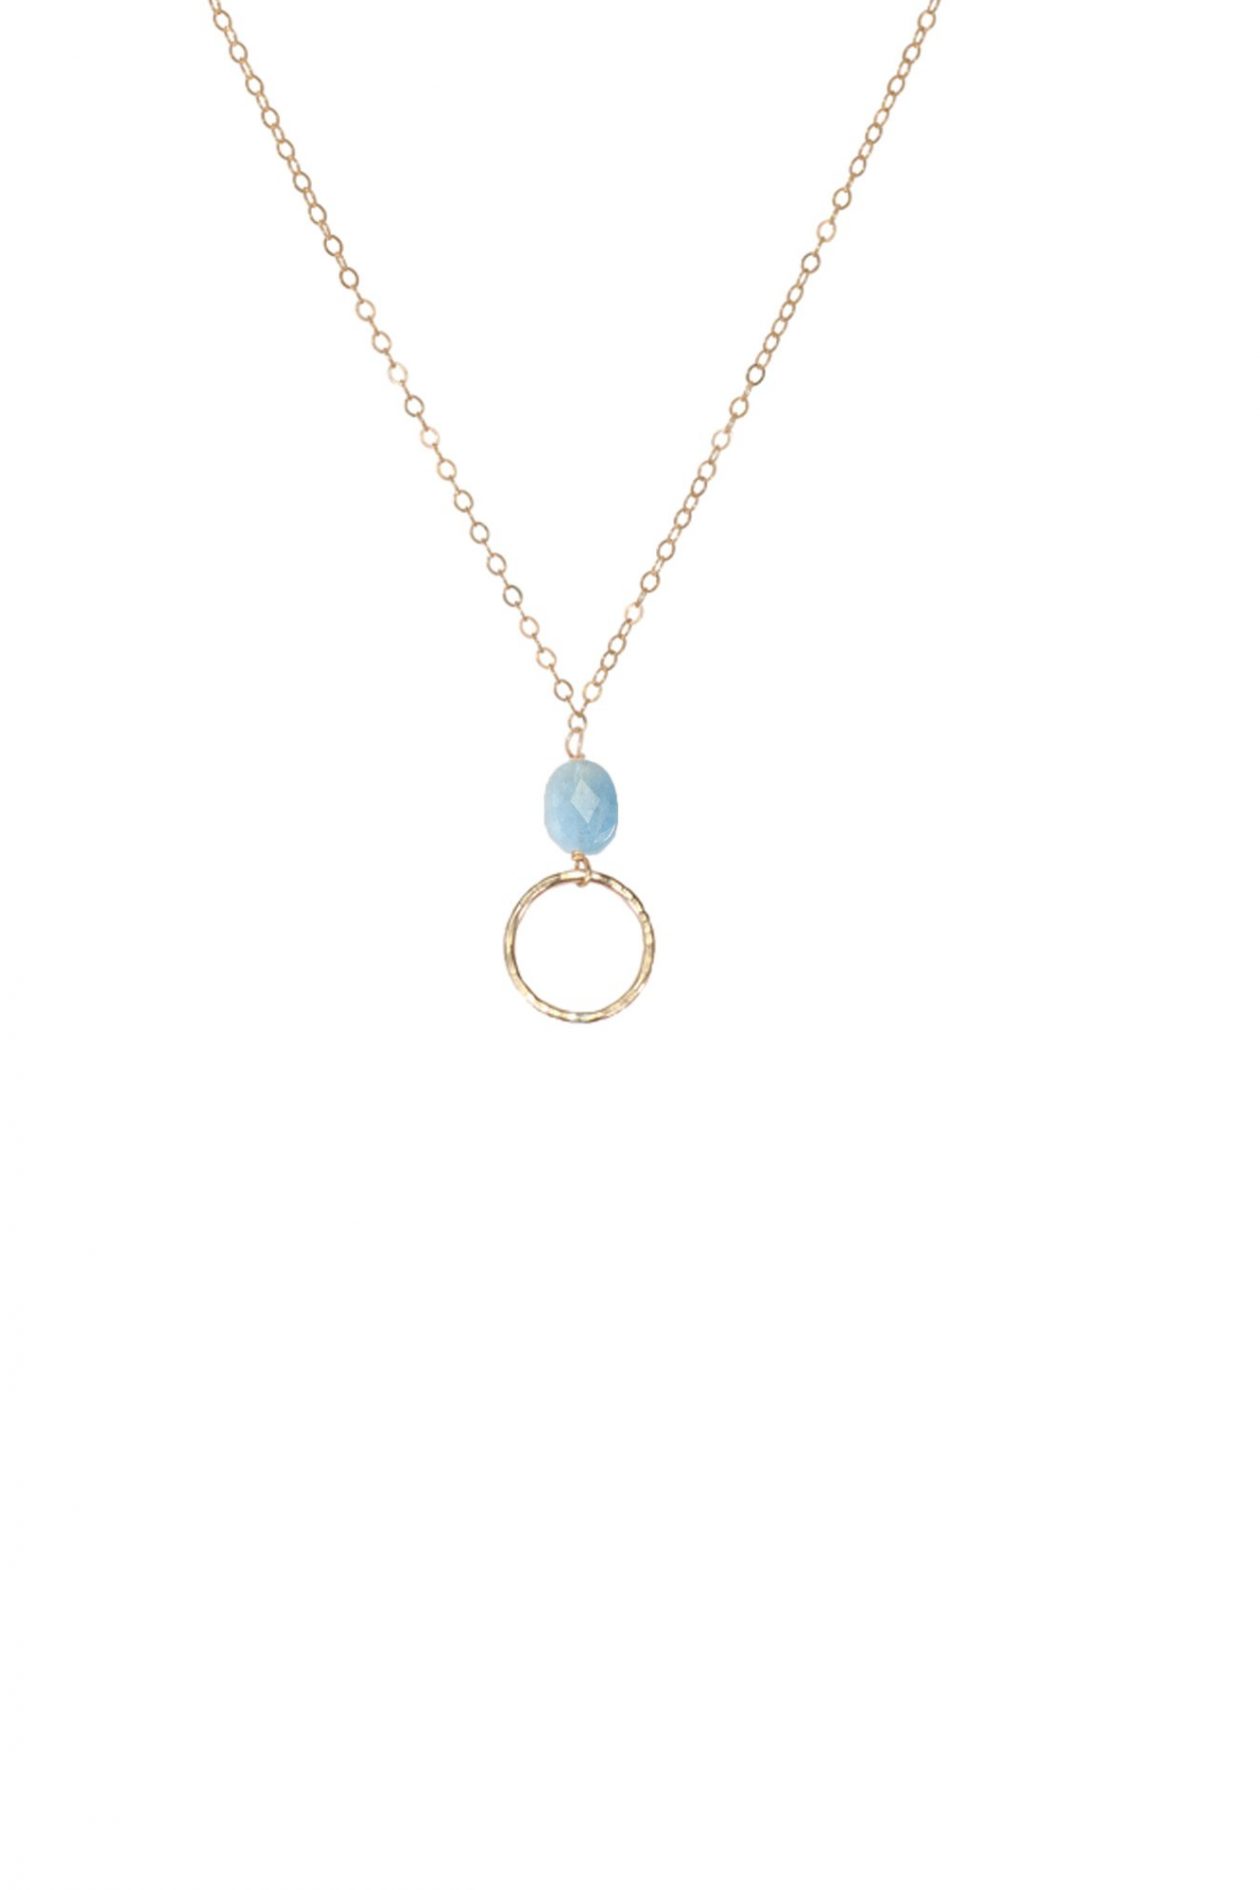 JK Designs Oval Gemstone Necklace